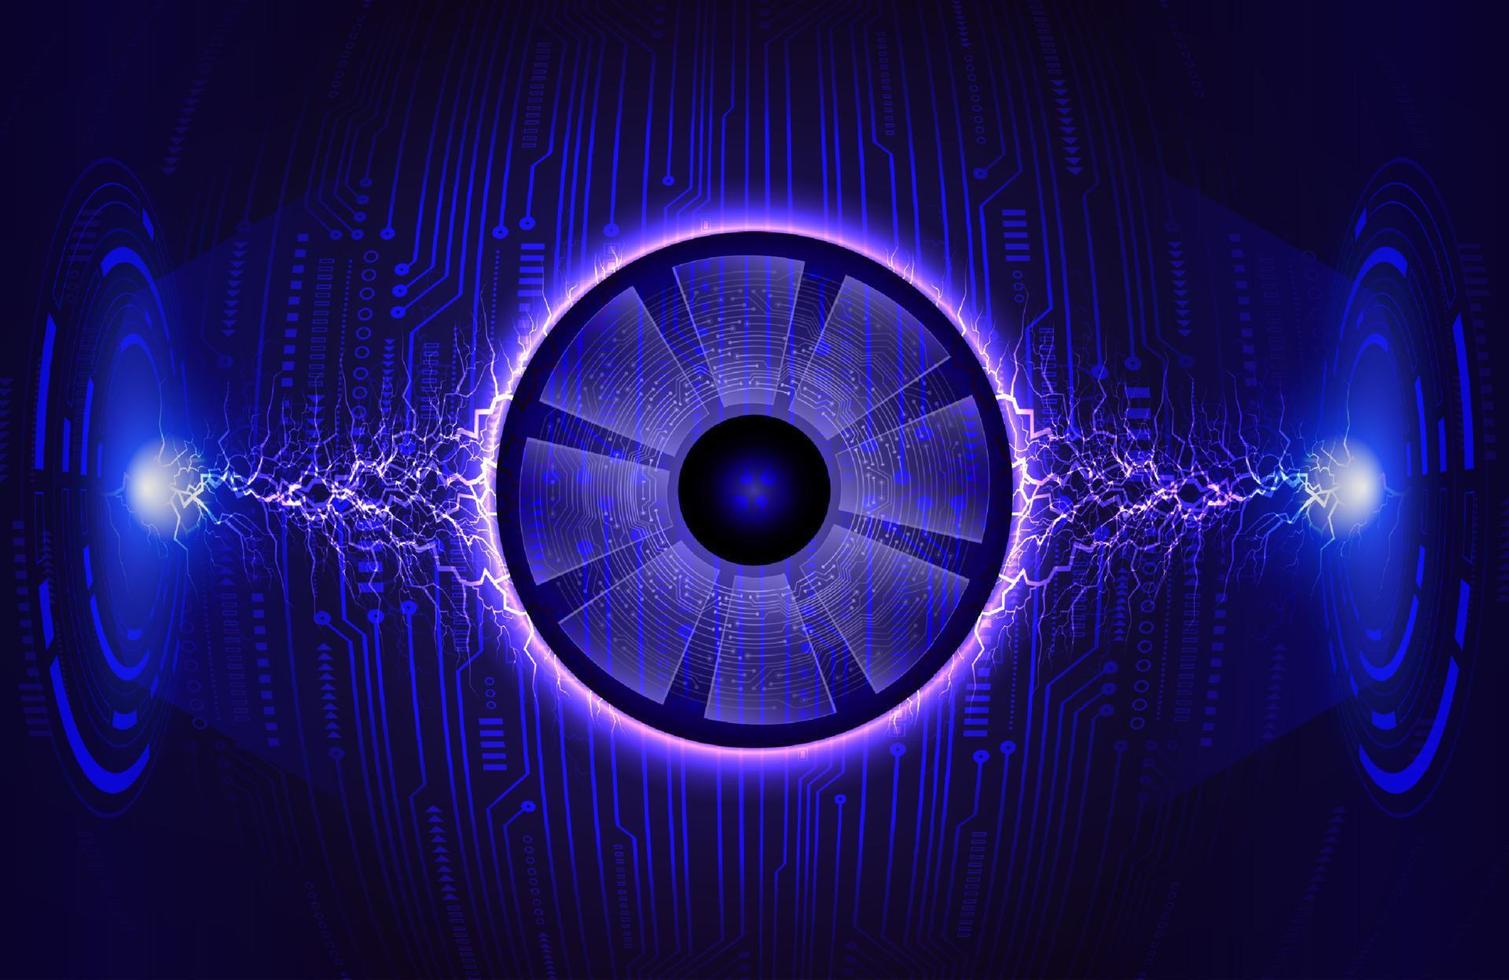 holograma de ojo moderno sobre fondo de tecnología vector